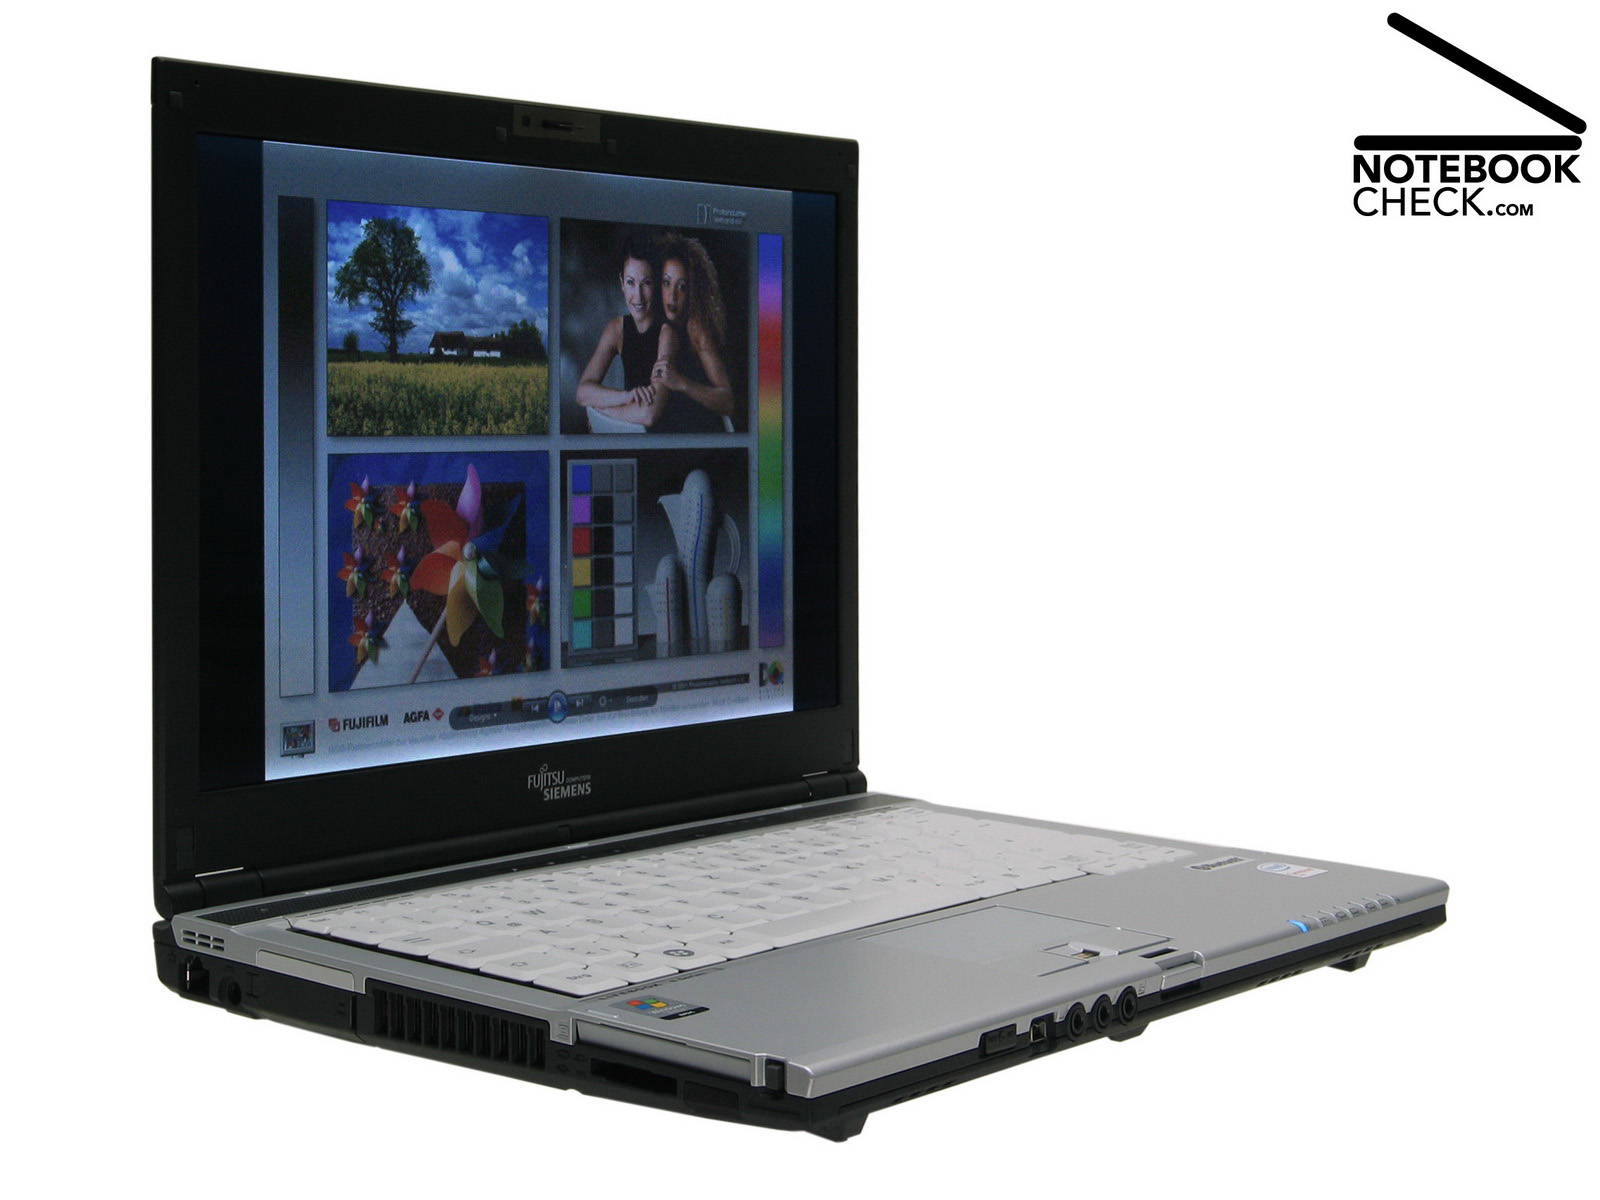 معرفی و بررسی لپ تاپ استوک Fujitsu Lifebook S6410